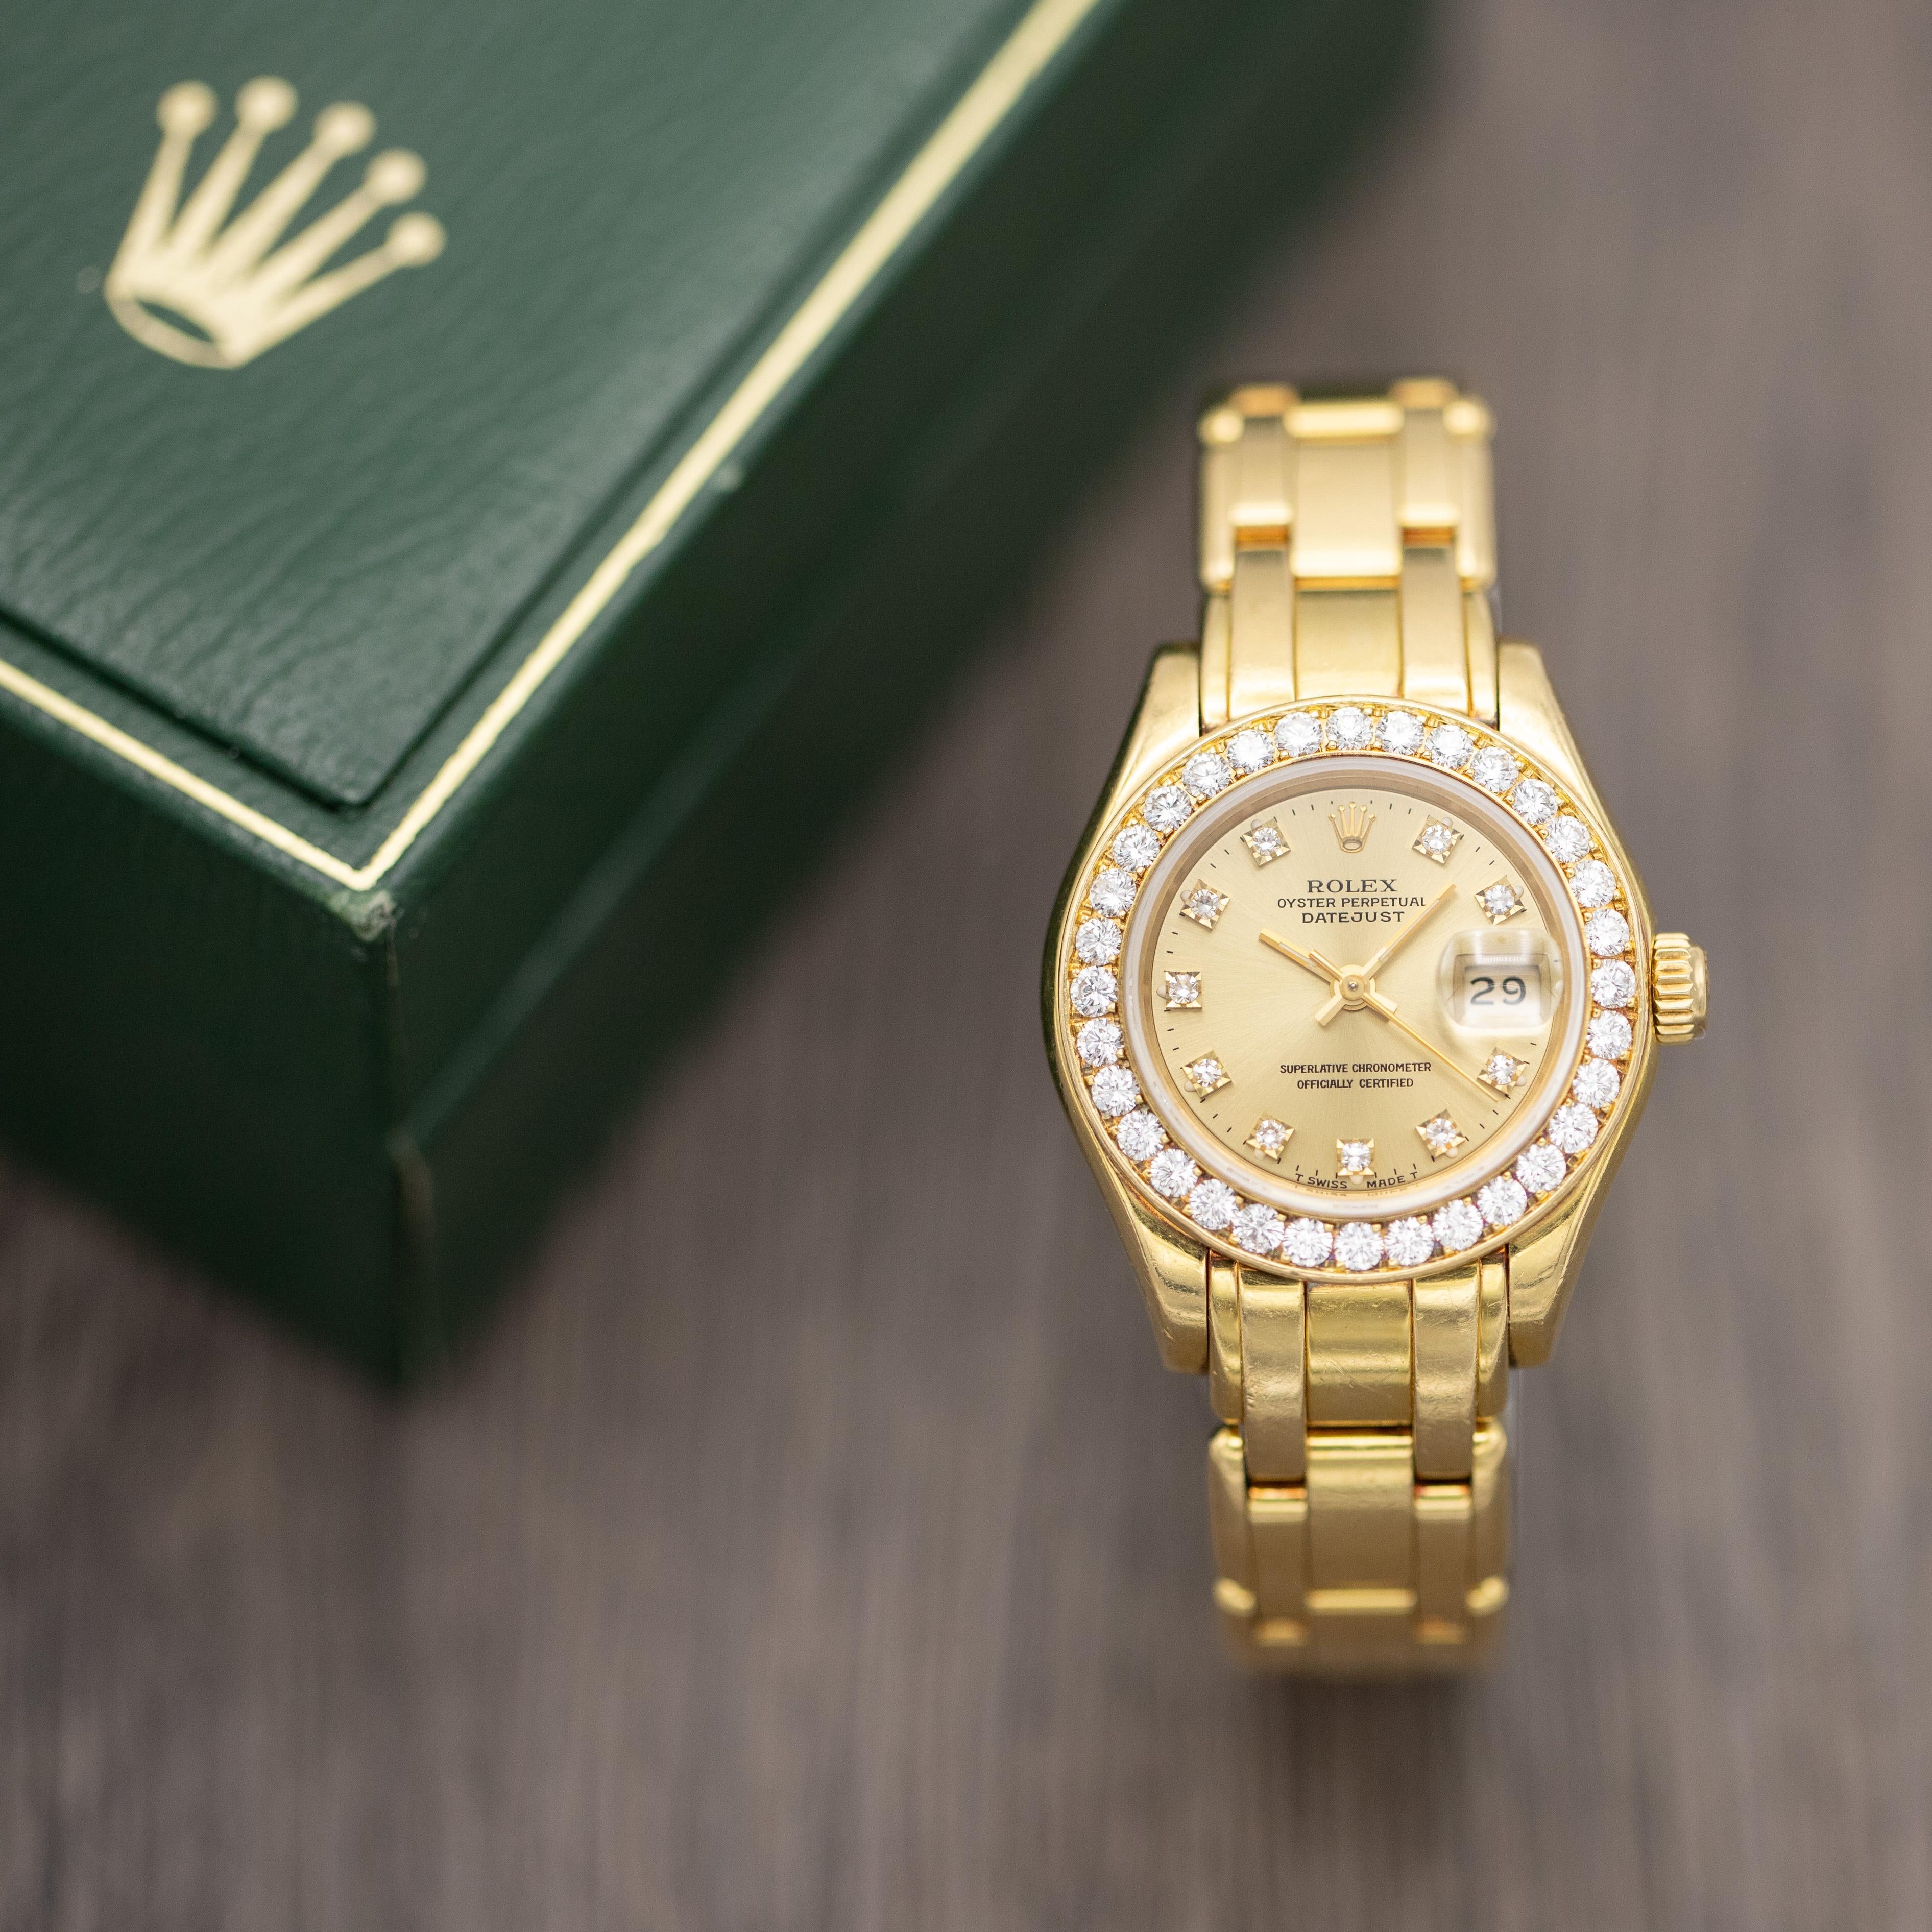 Zum Verkauf steht eine Swiss Made Rolex Oyster Perpetual Lady Datejust Pearlmaster mit der Referenznummer 69298, die laut Seriennummer aus dem Jahr 1991 stammt. Laut Rolex handelt es sich um eine feminine Neuinterpretation der emblematischen